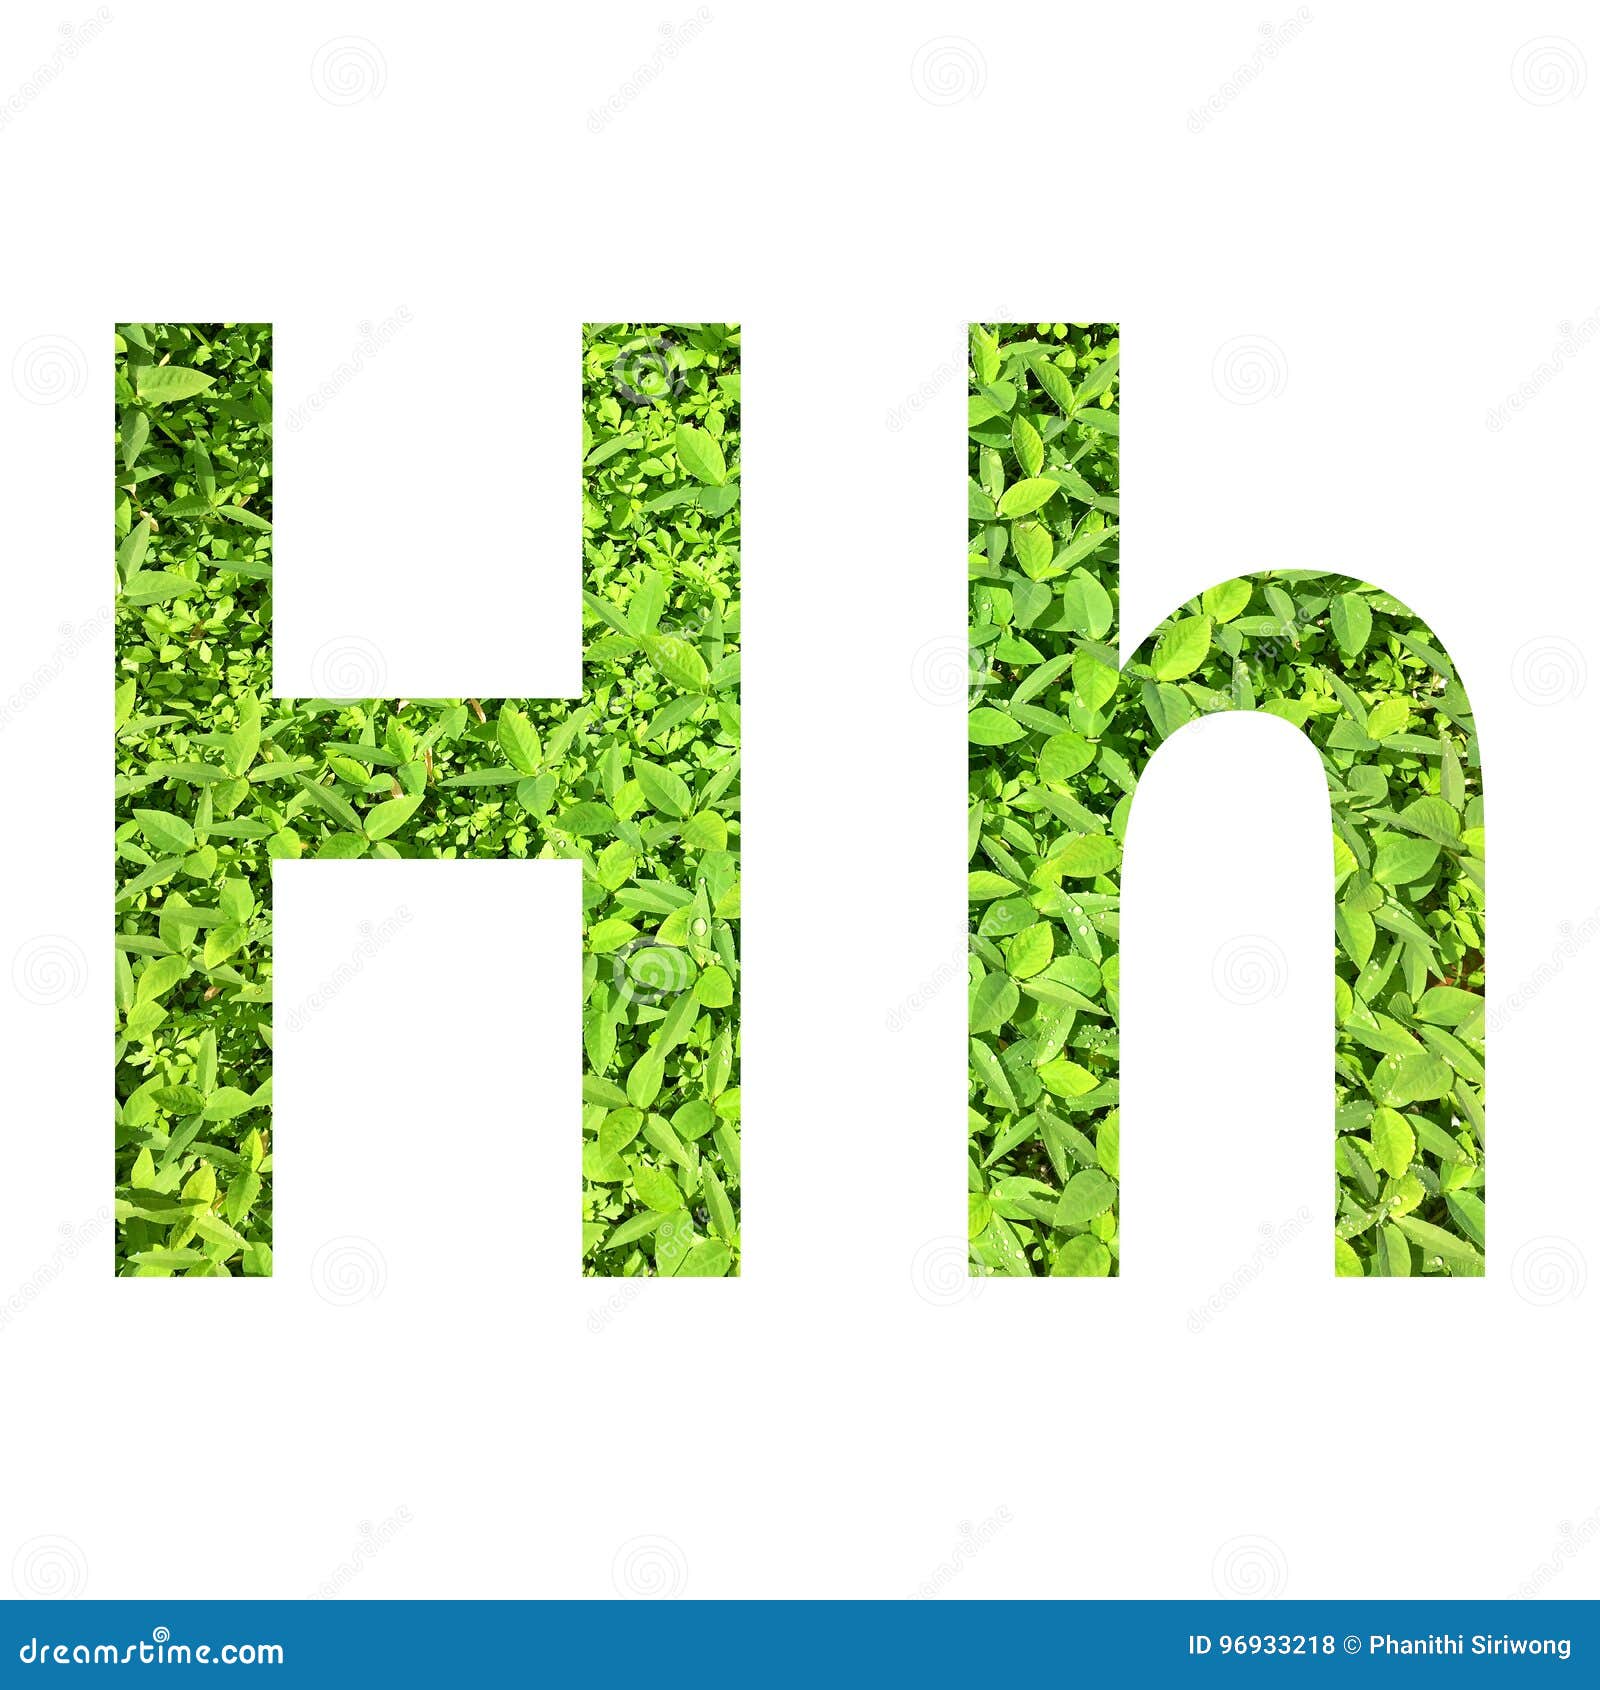 English alphabet â€œH.hâ€ made from green grass on white background for isolated